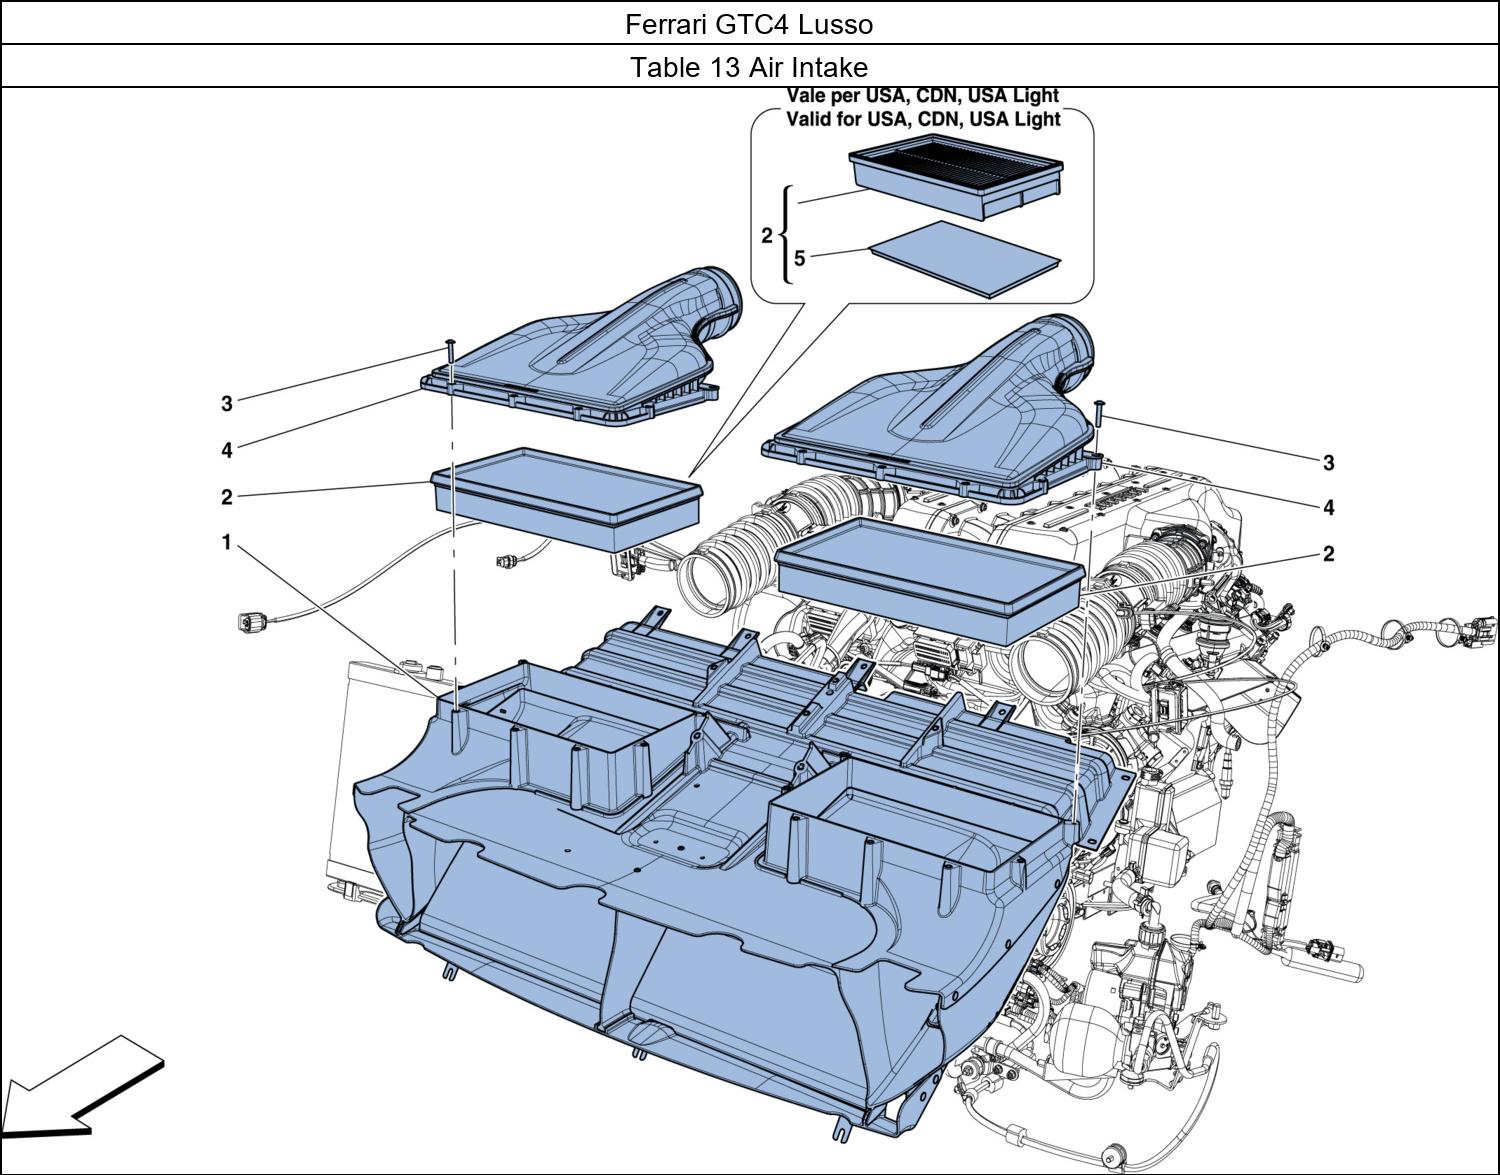 Ferrari Parts Ferrari GTC4 Lusso Table 13 Air Intake